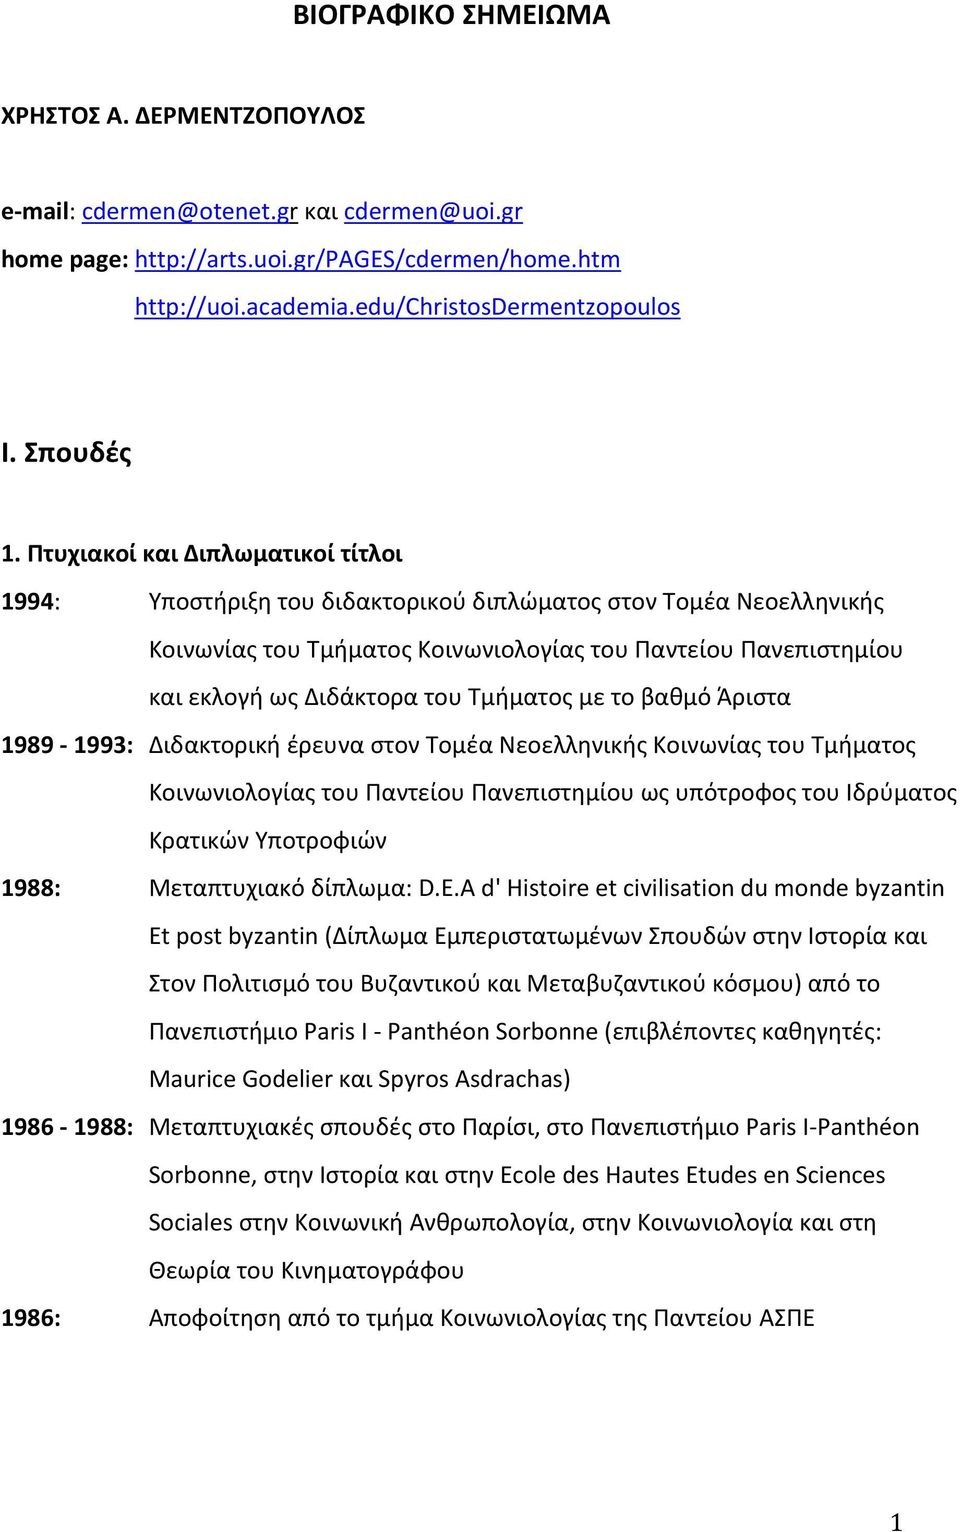 Πτυχιακοί και Διπλωματικοί τίτλοι 1994: Yποστήριξη του διδακτορικού διπλώματος στον Tομέα Nεοελληνικής Kοινωνίας του Tμήματος Kοινωνιολογίας του Παντείου Πανεπιστημίου και εκλογή ως Διδάκτορα του